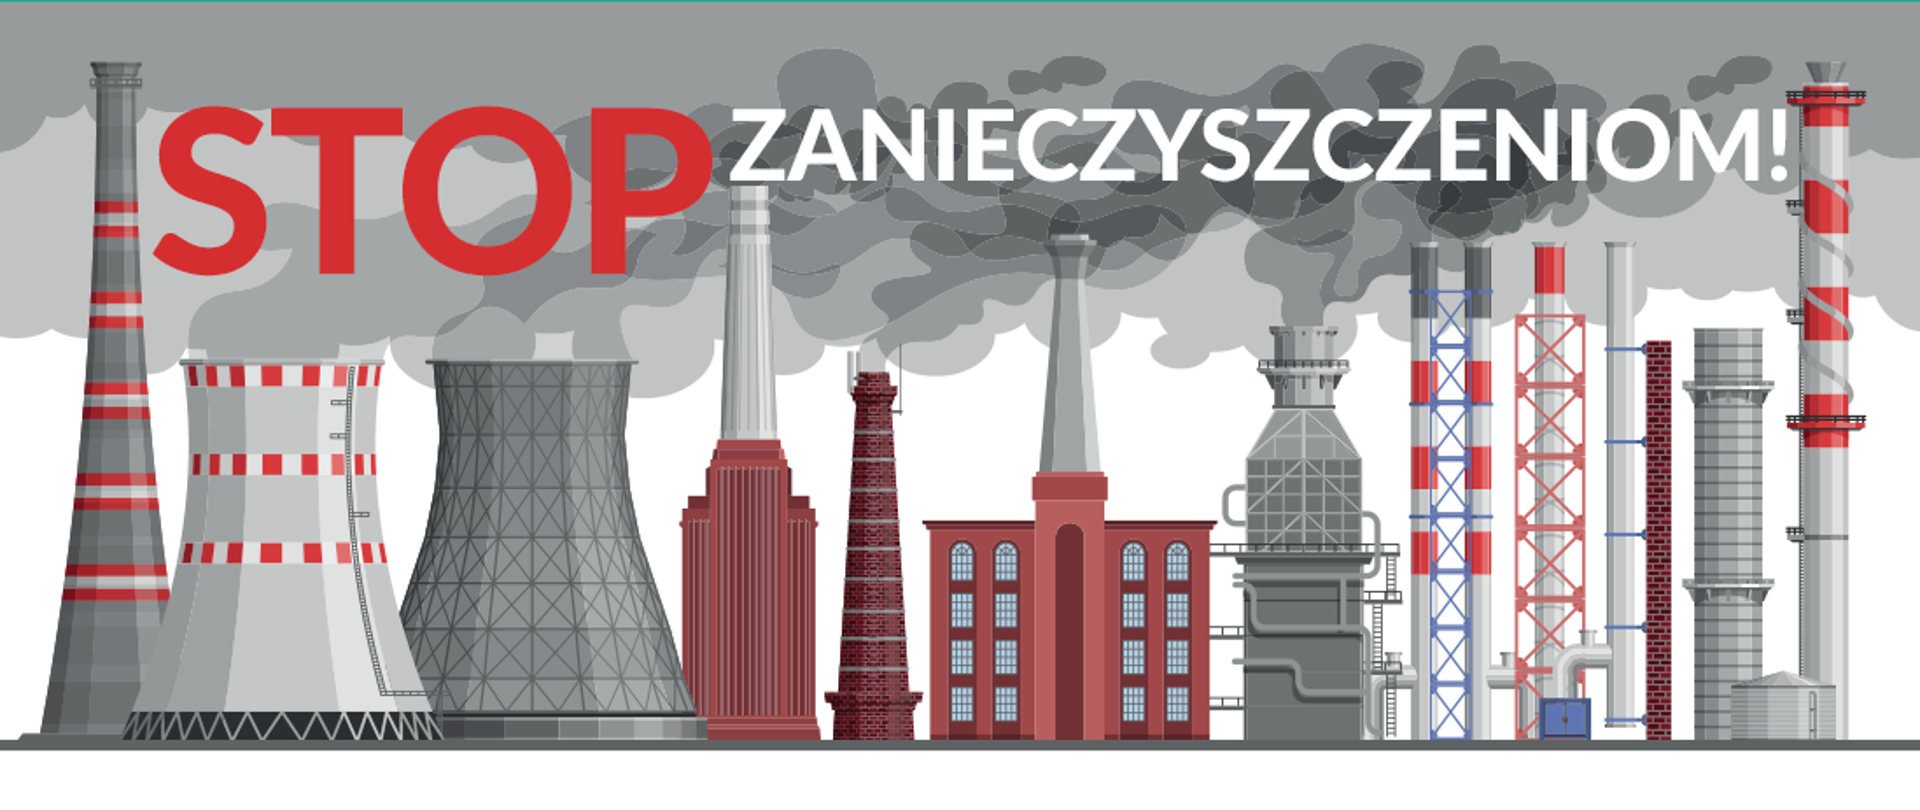 baner o treści: "STOP ZANIECZYSZCZENIOM!" przedstawiający budynki fabryczne z zadymionymi kominami.